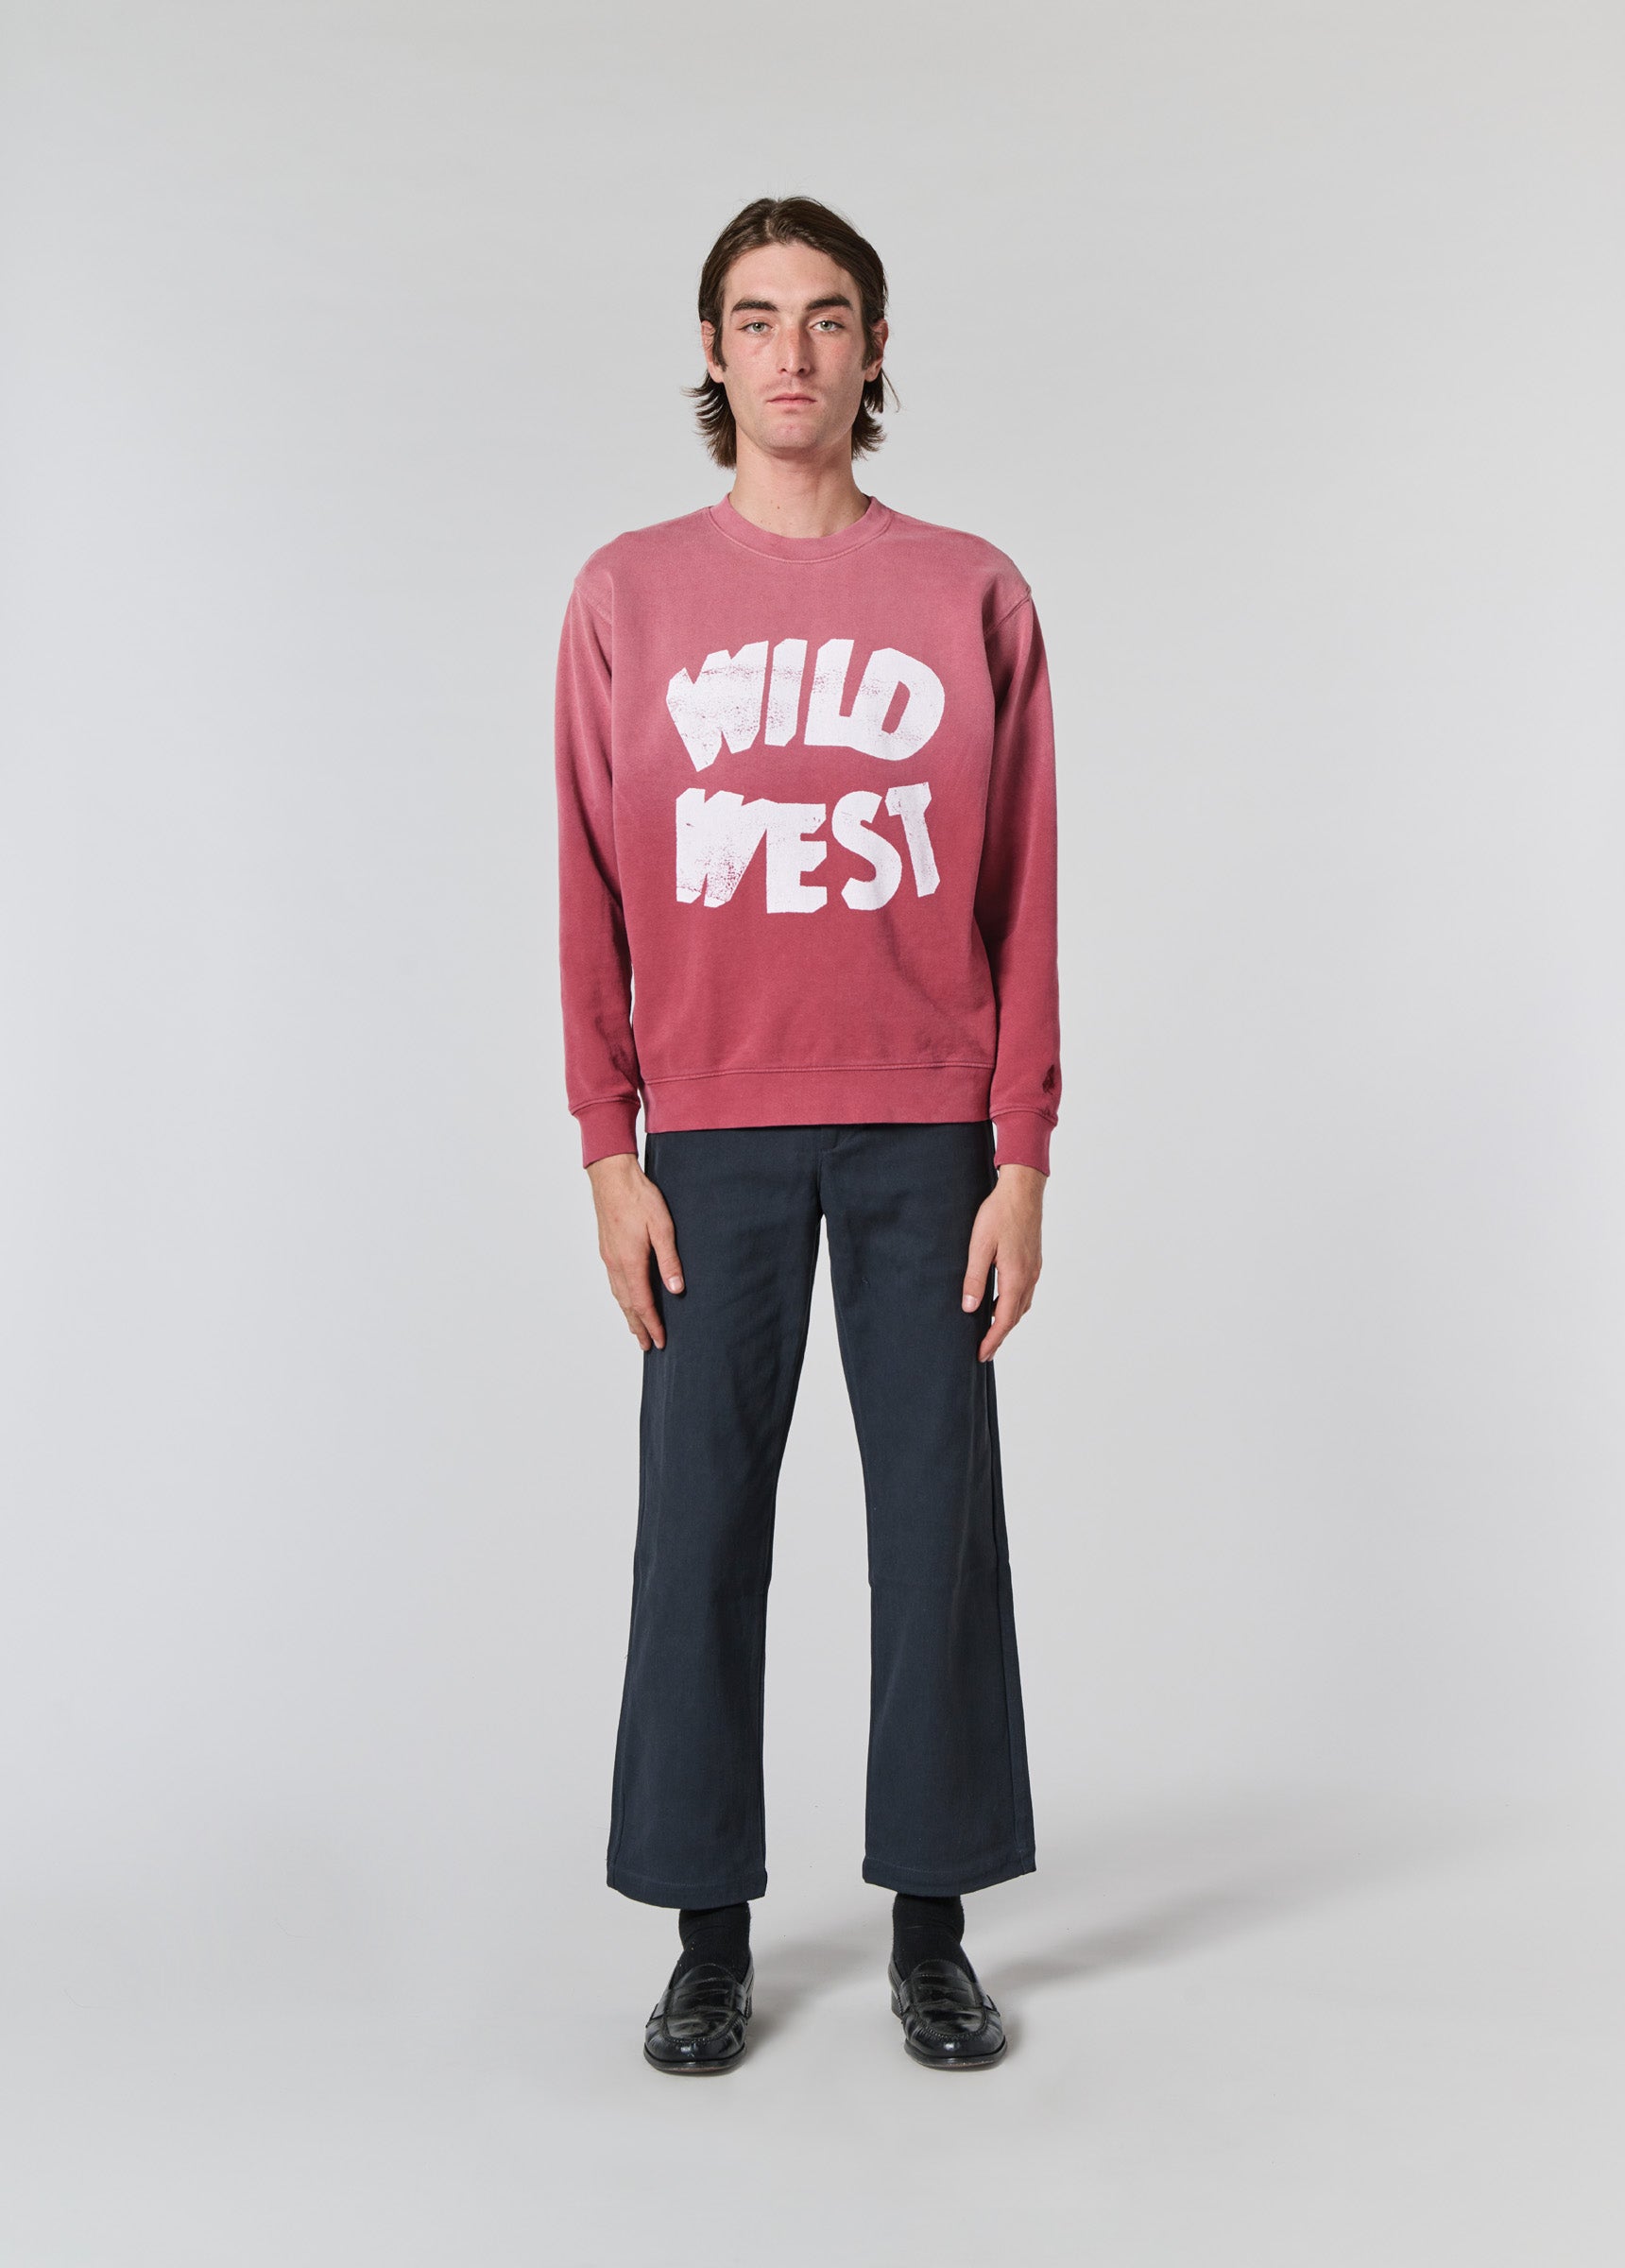 Wild West Crewneck Sweatshirt | Burgundy